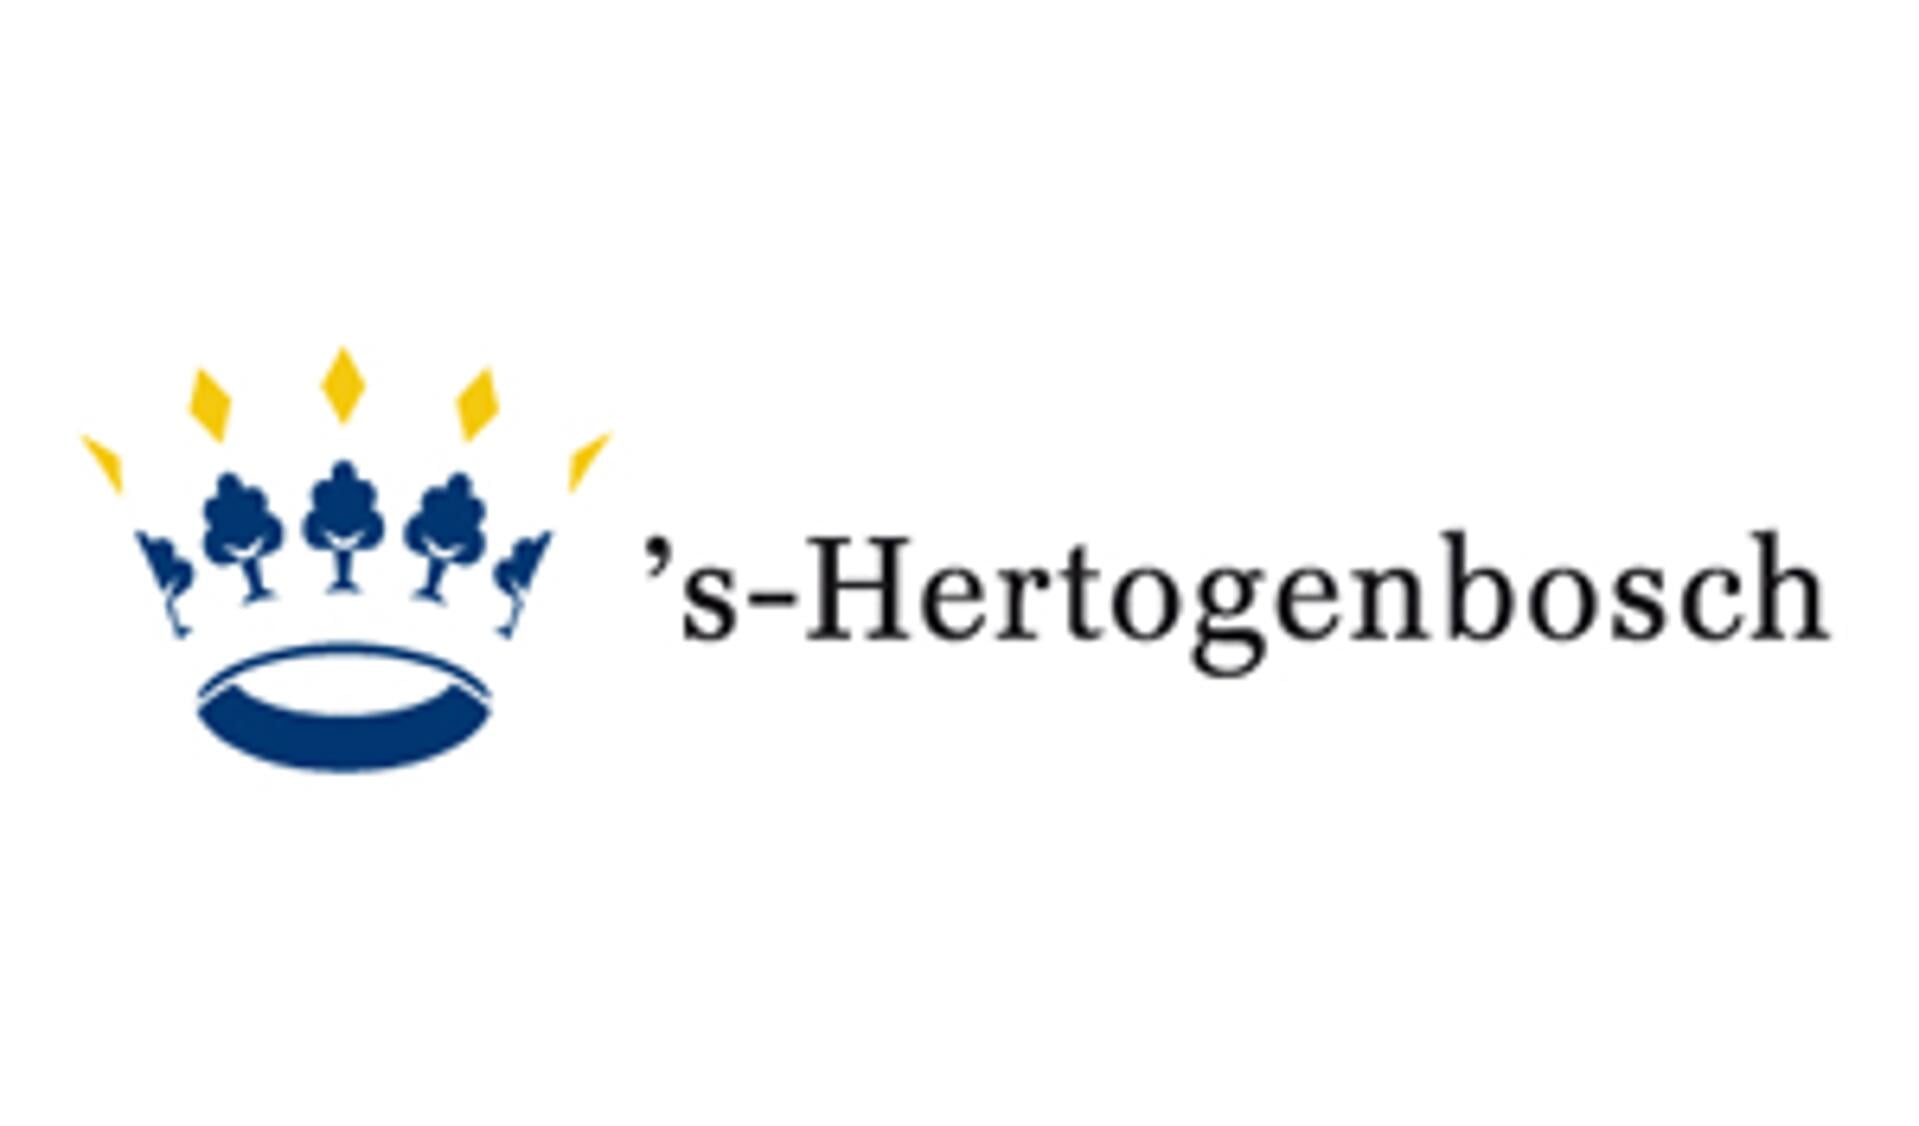 Bericht van de gemeente 's-Hertogenbosch.